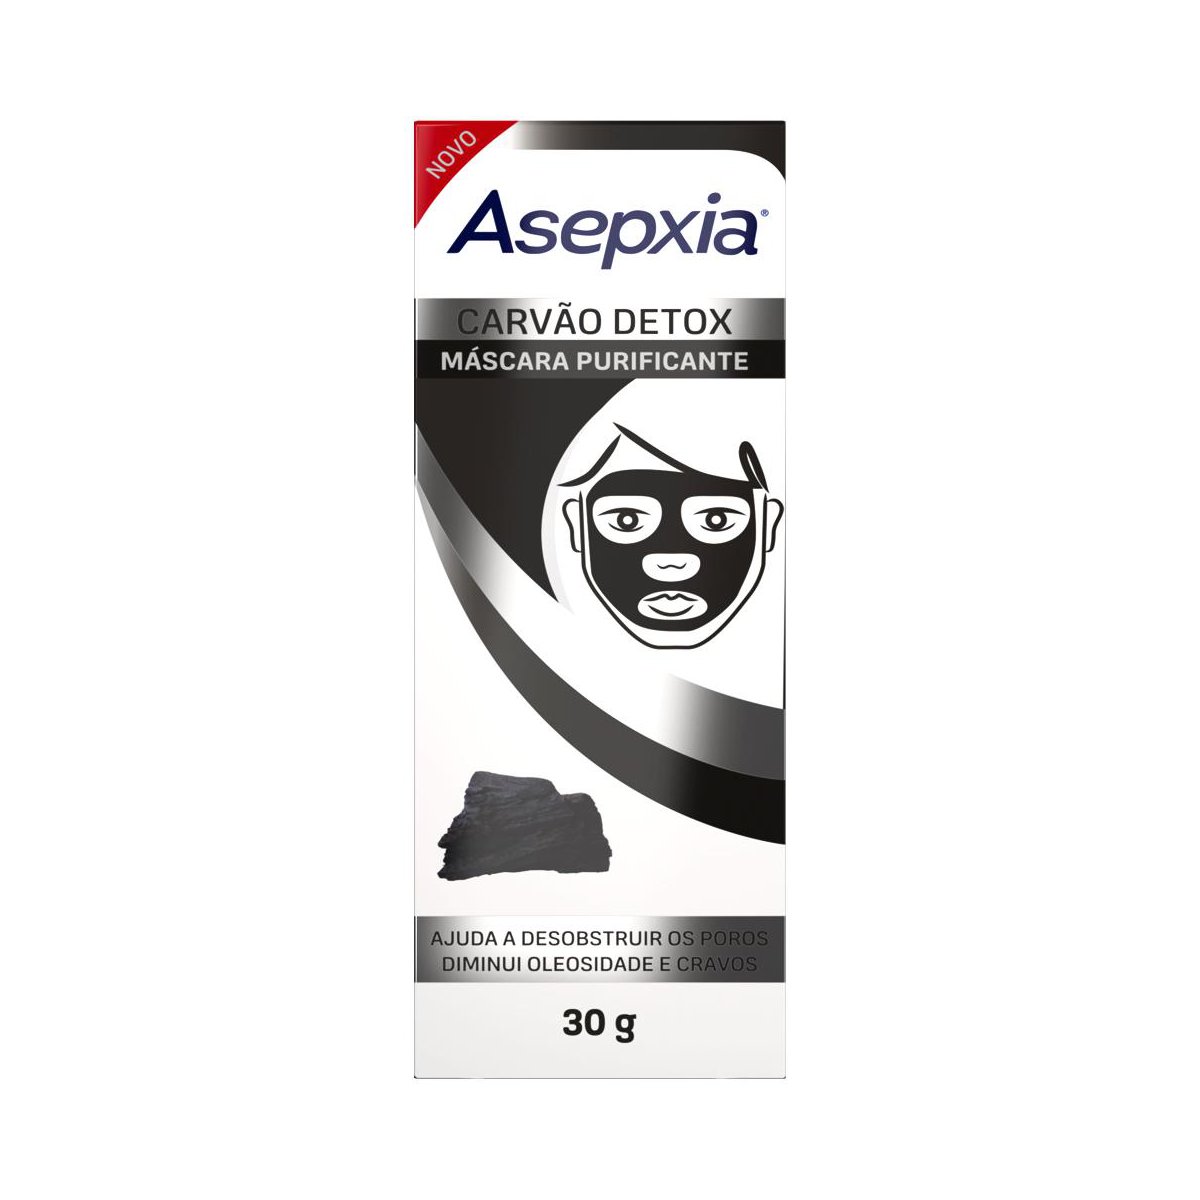 Mascara Facial Asepxia Carvao Detox Purificante 30g